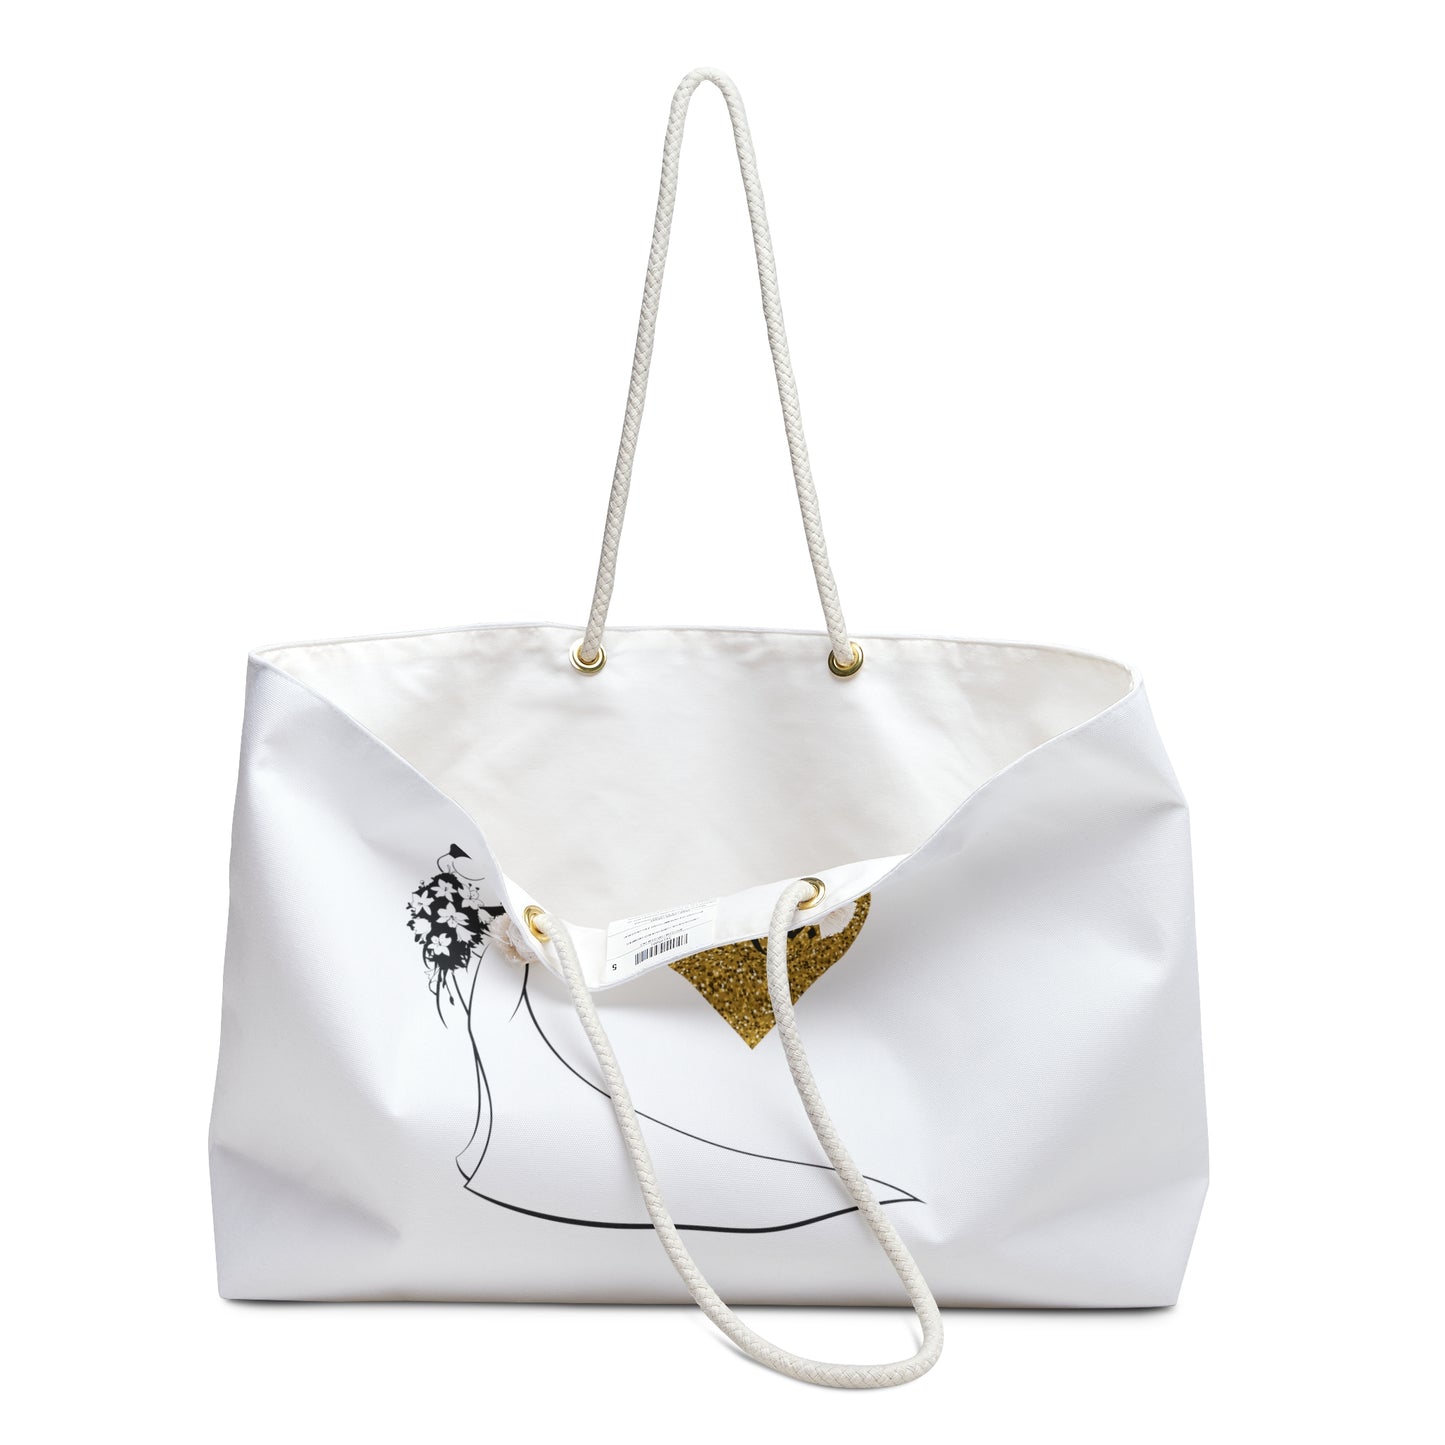 Bride Gift Bag/ Bride Tote bag/ Bride gift/ Classy look